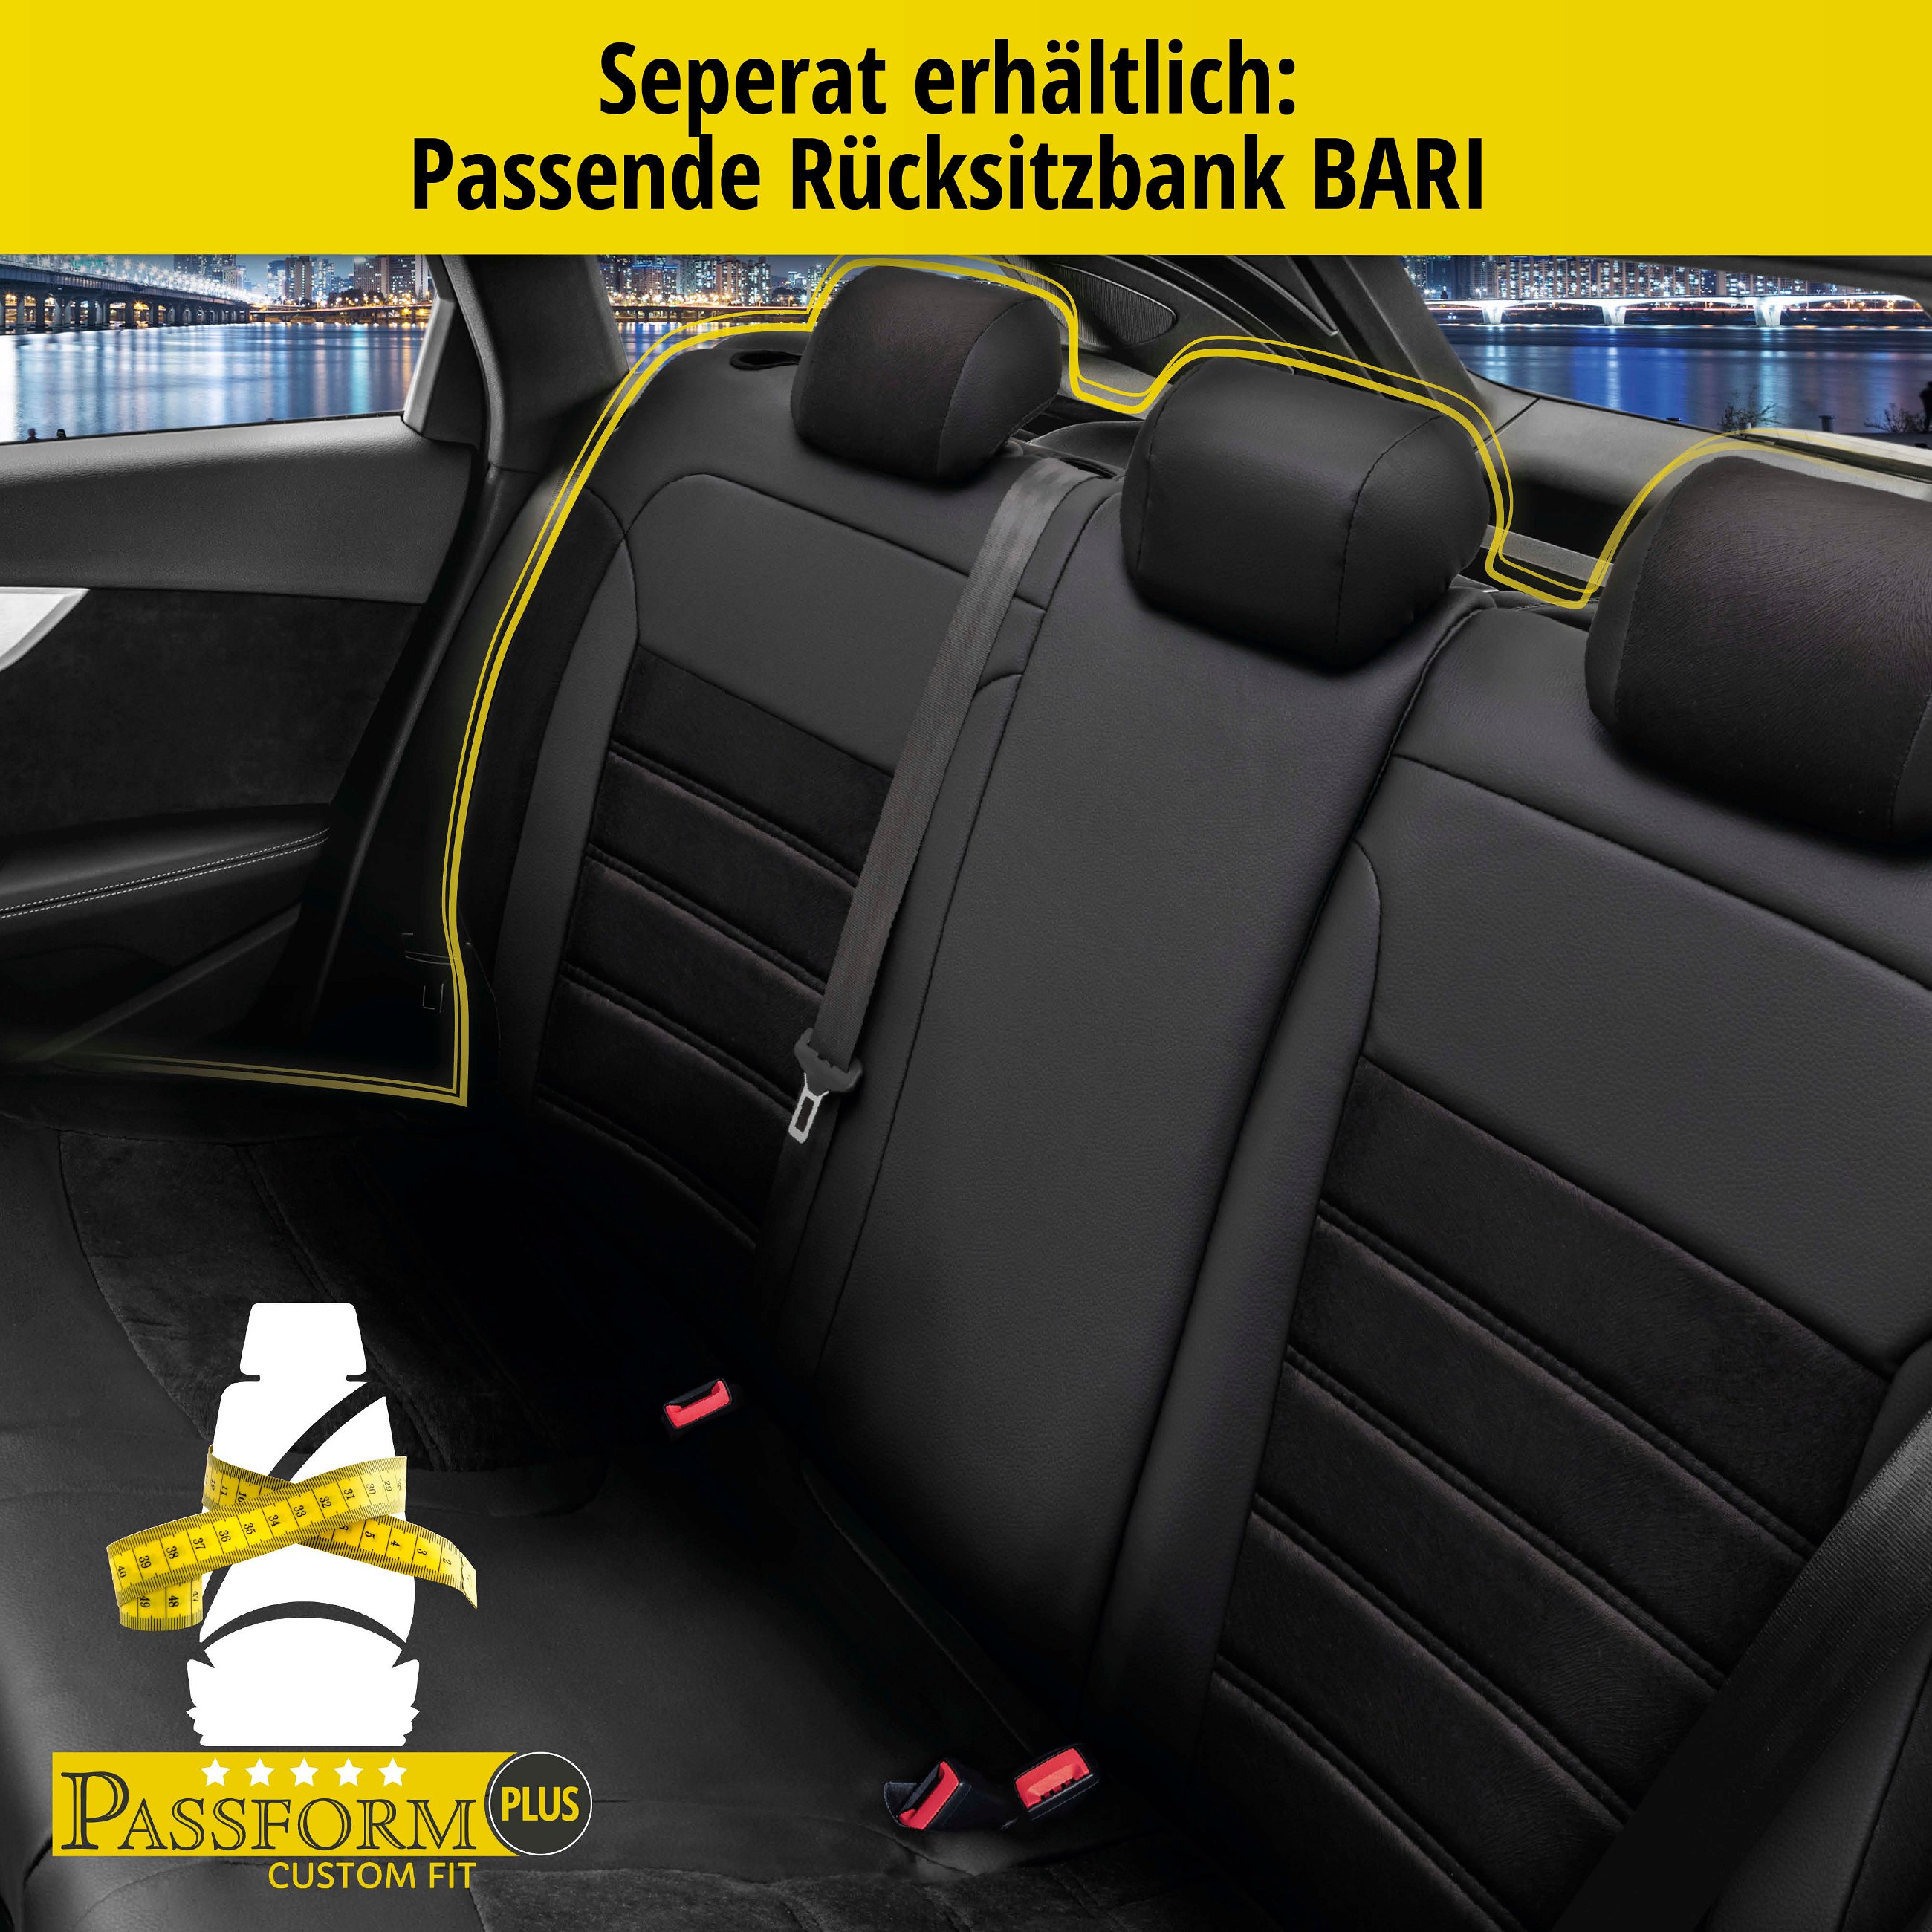 Passform Sitzbezug Bari für Mitsubishi Colt VI (Z3A, Z2A) 10/2002-12/2012, 2 Einzelsitzbezüge für Normalsitze